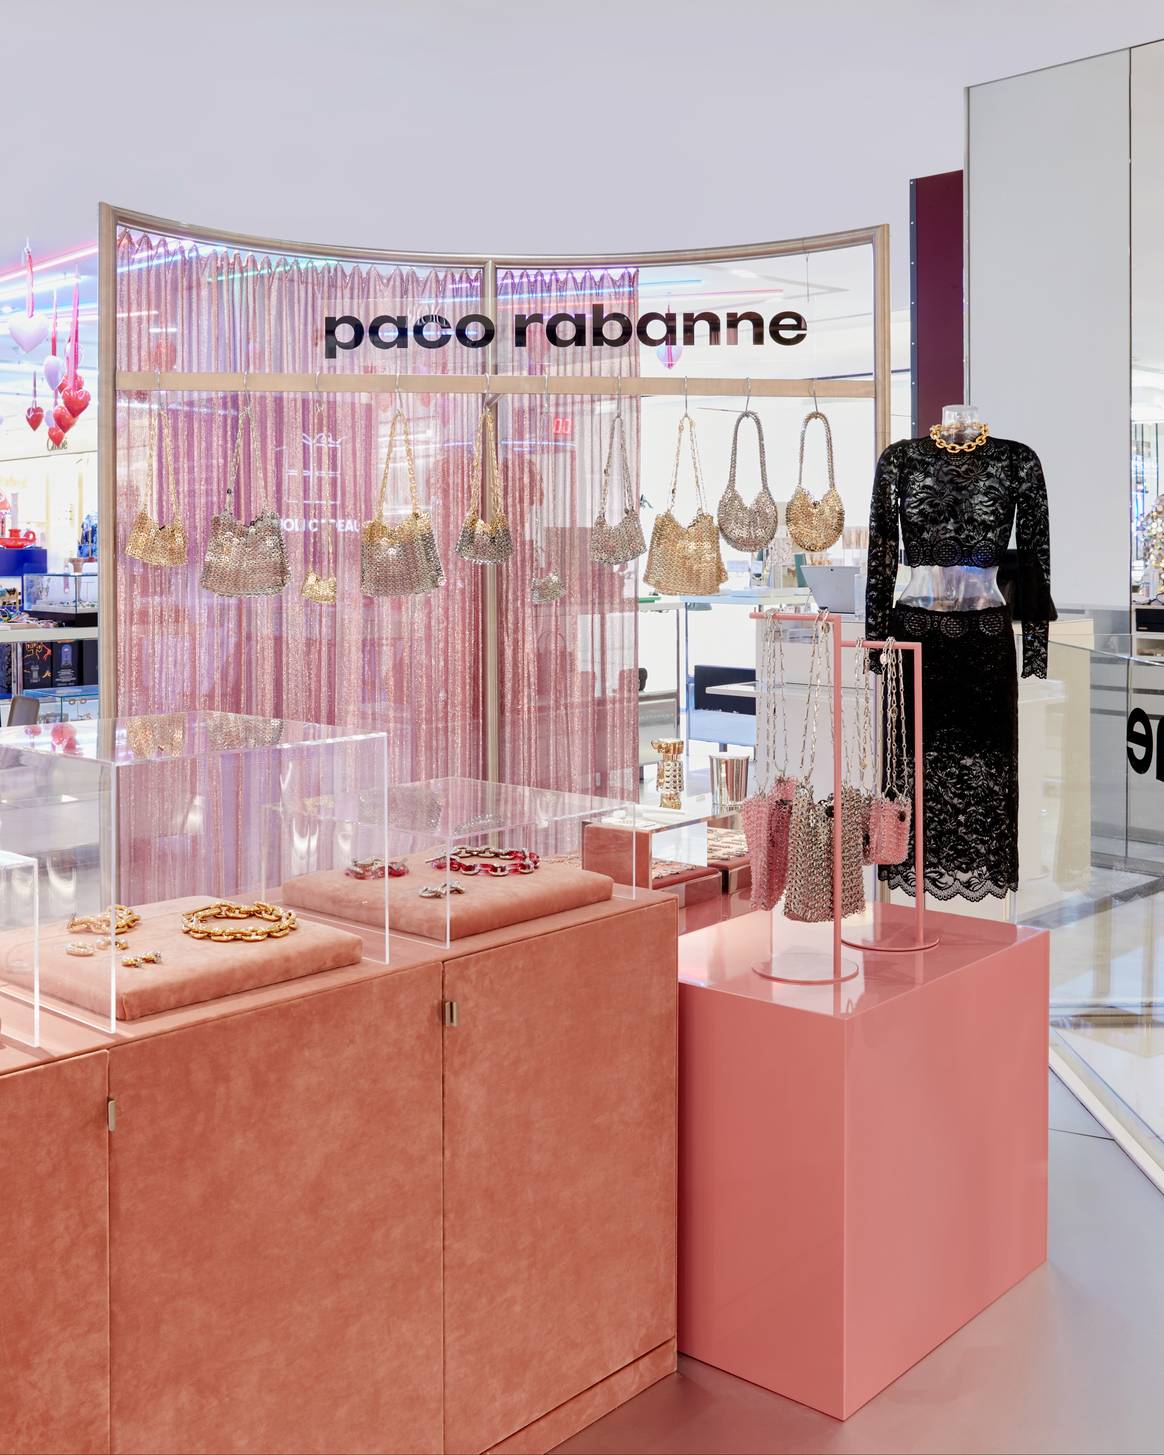 Pop-up store Paco Rabanne, Printemps Haussmann, Paris. Crédit : Paco Rabanne